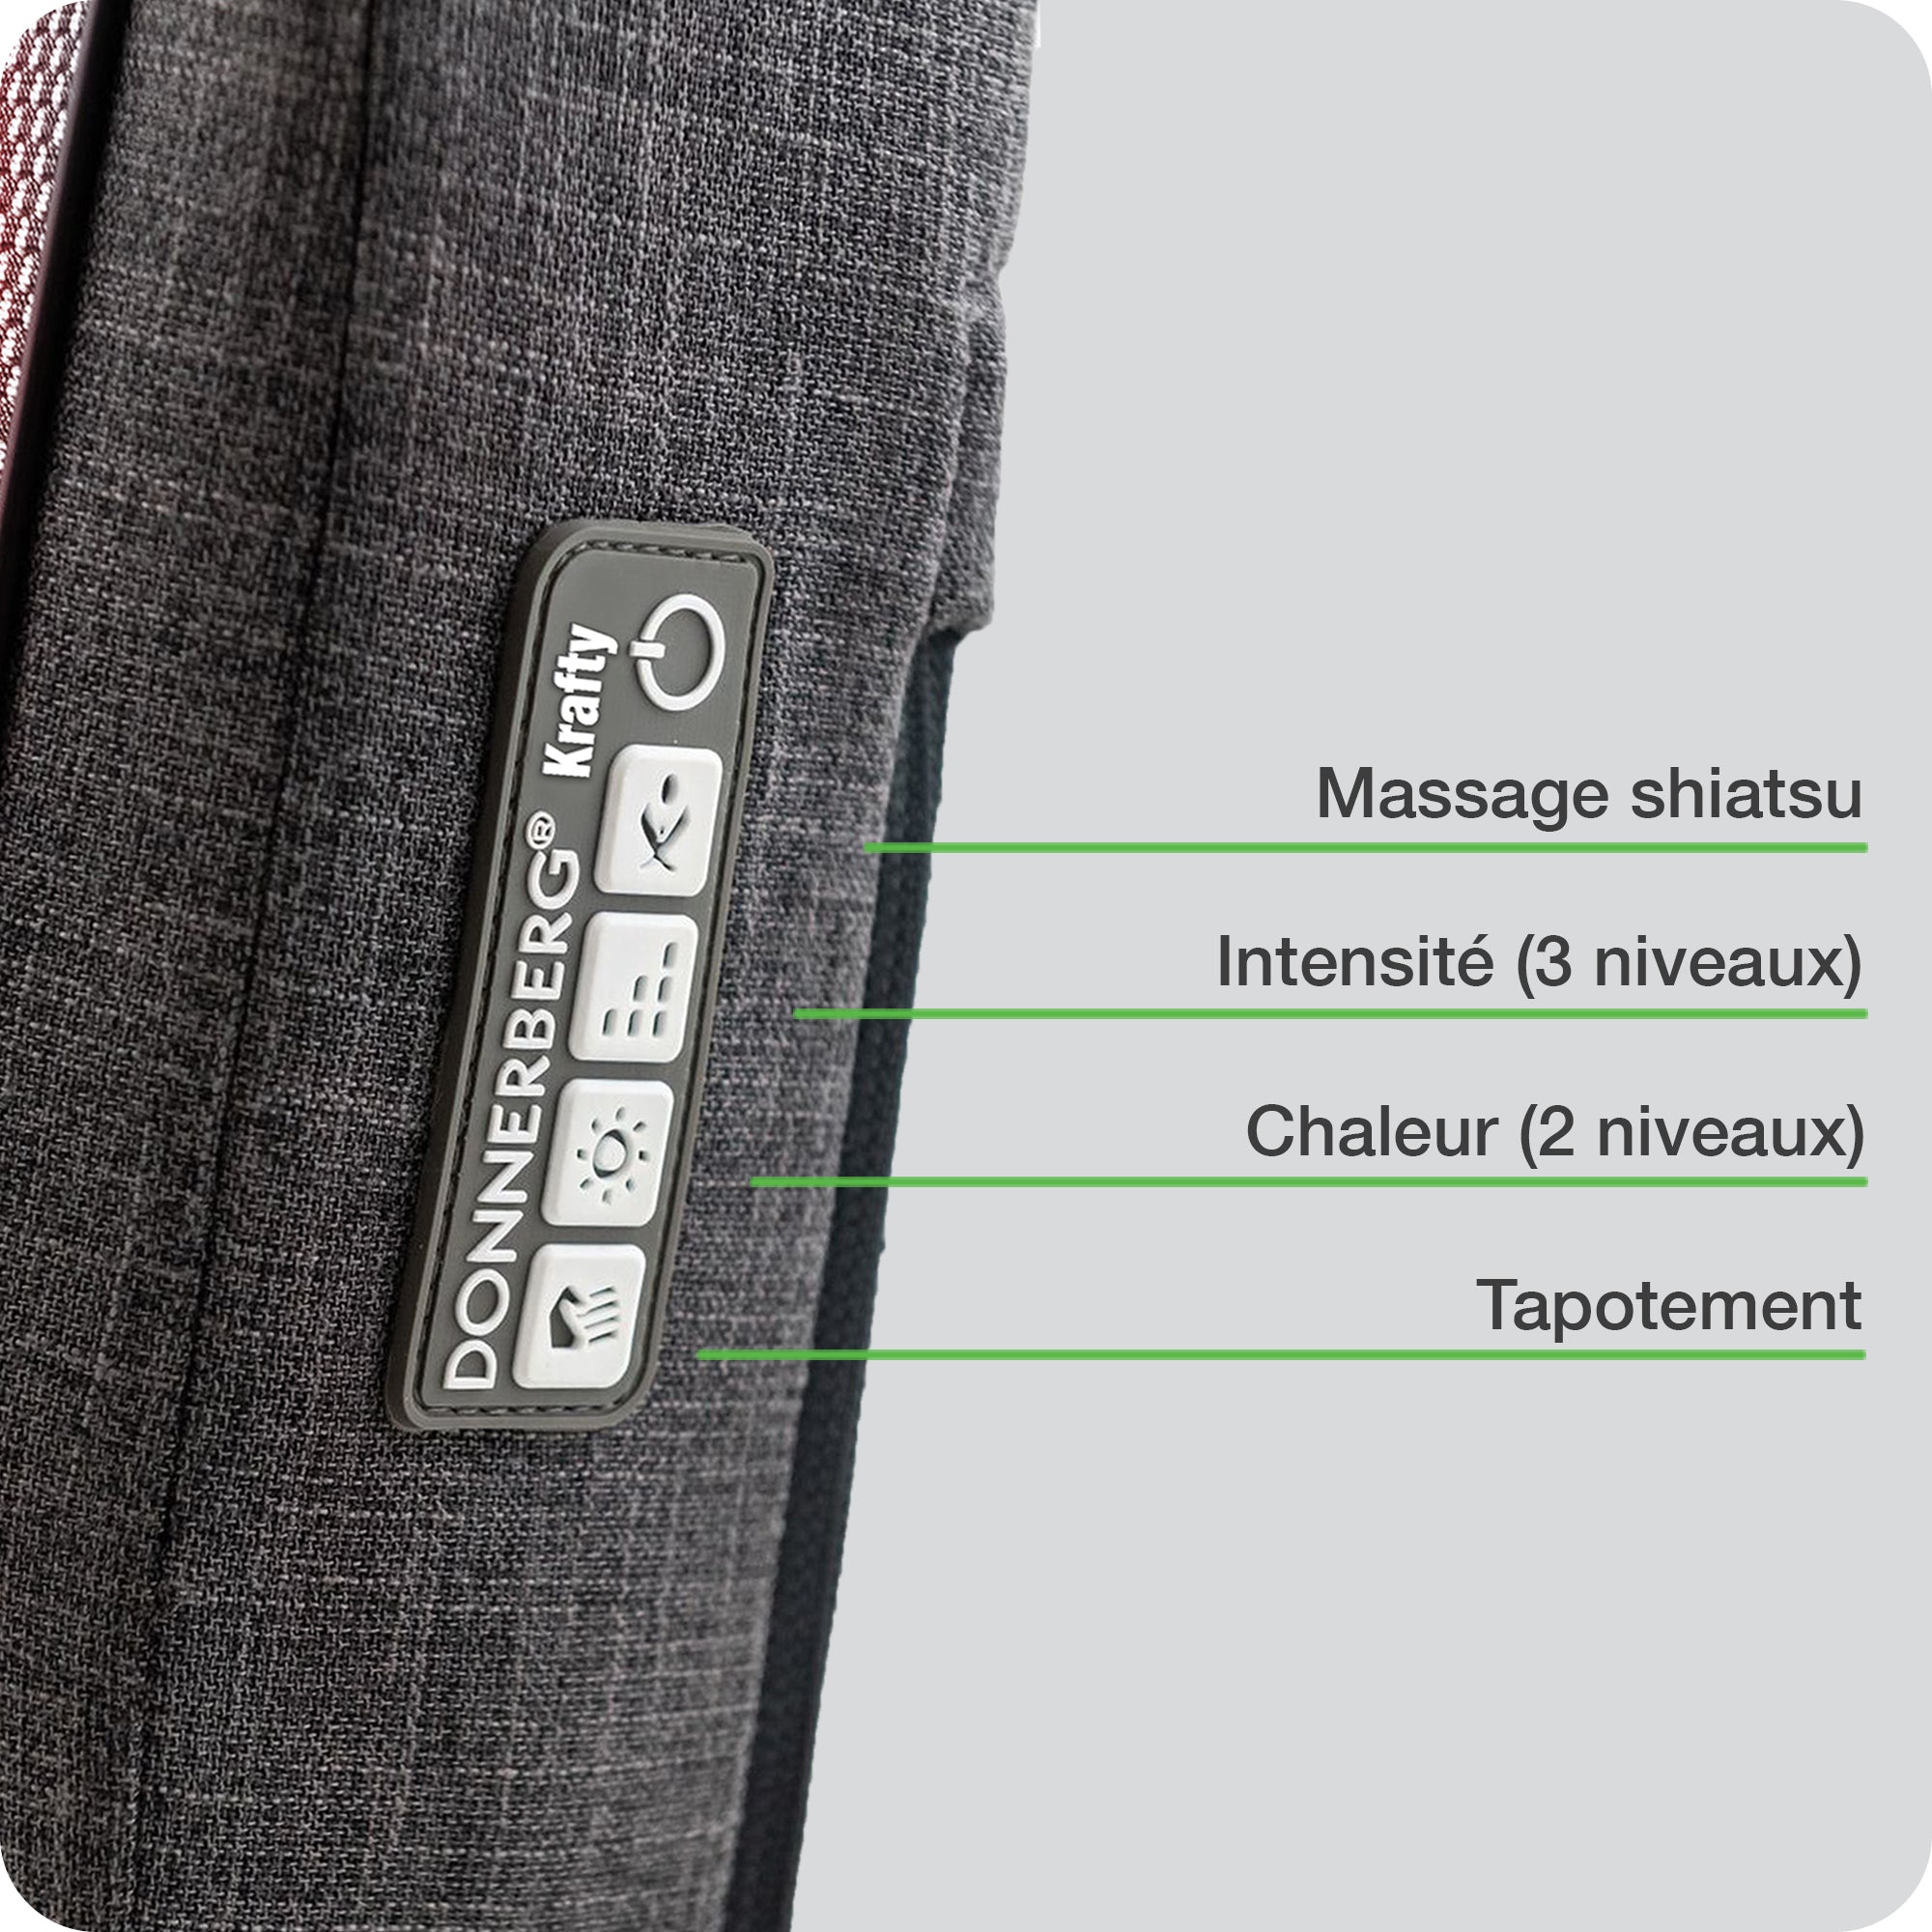 Le panneau de commande accessible te permet de personnaliser ton massage